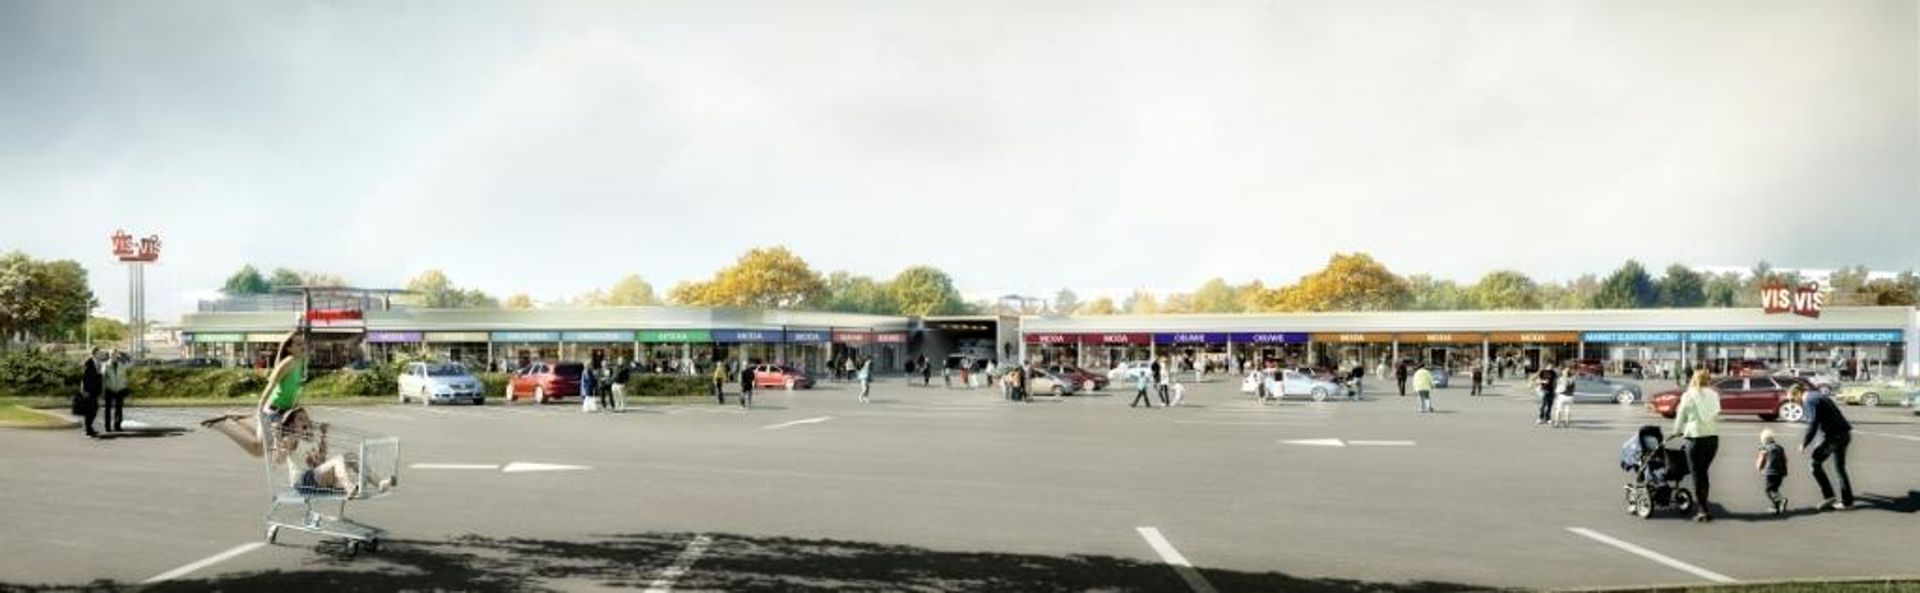  Capital Park rozpoczyna budowę street malla Vis &#224; Vis w Łodzi